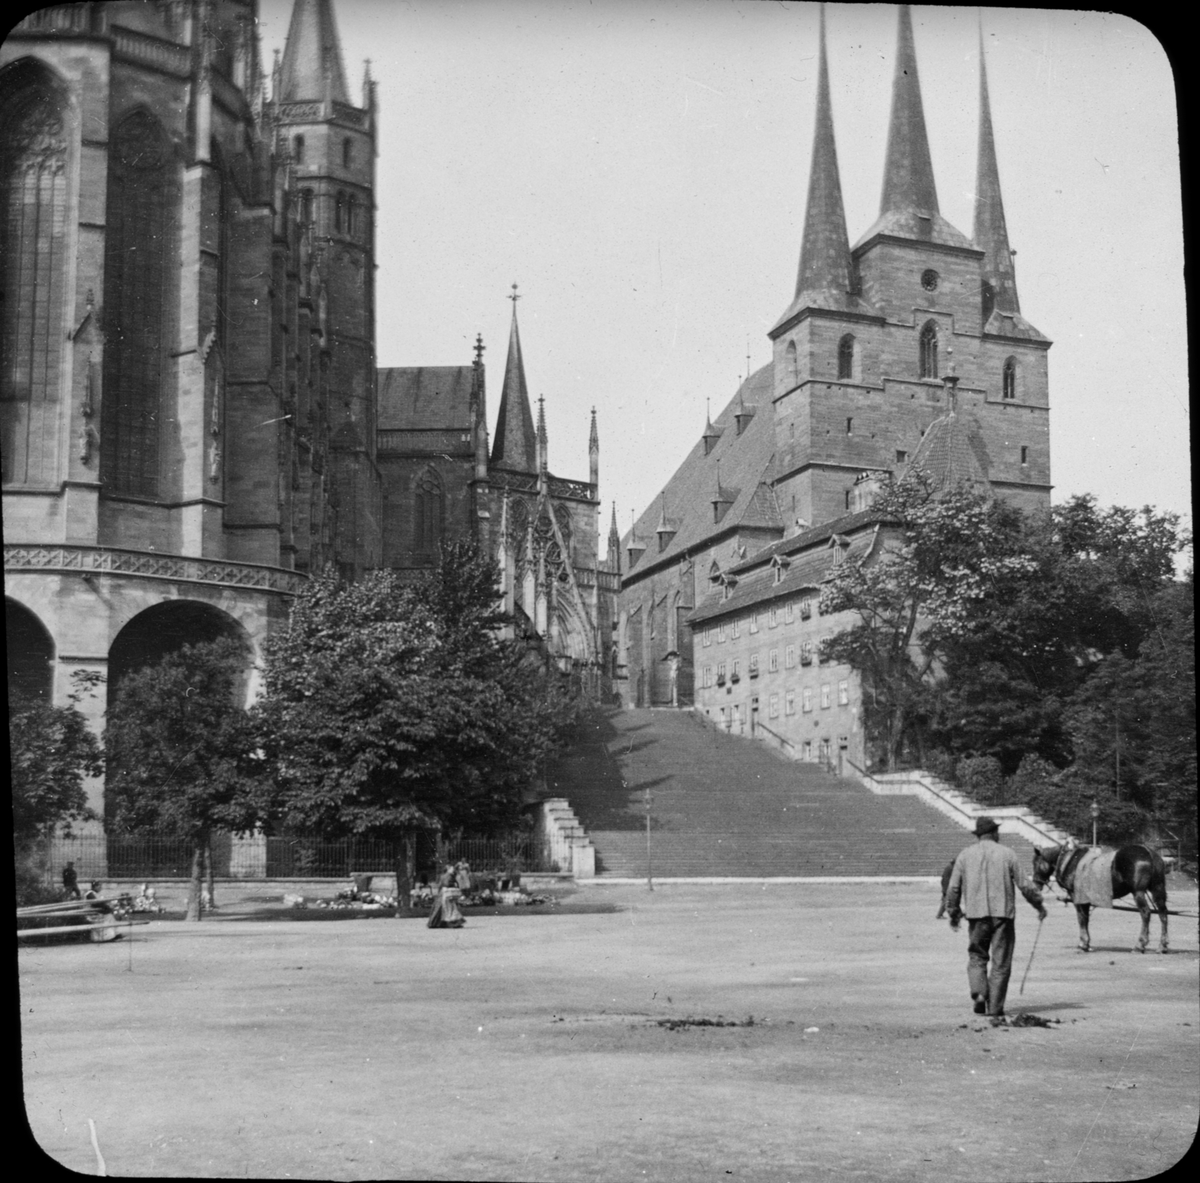 Skioptikonbild med motiv från Erfurt med katedralen Marienkirche och Severikirche.
Bilden har förvarats i kartong märkt: Resan 1908. Erfurt 8. 16